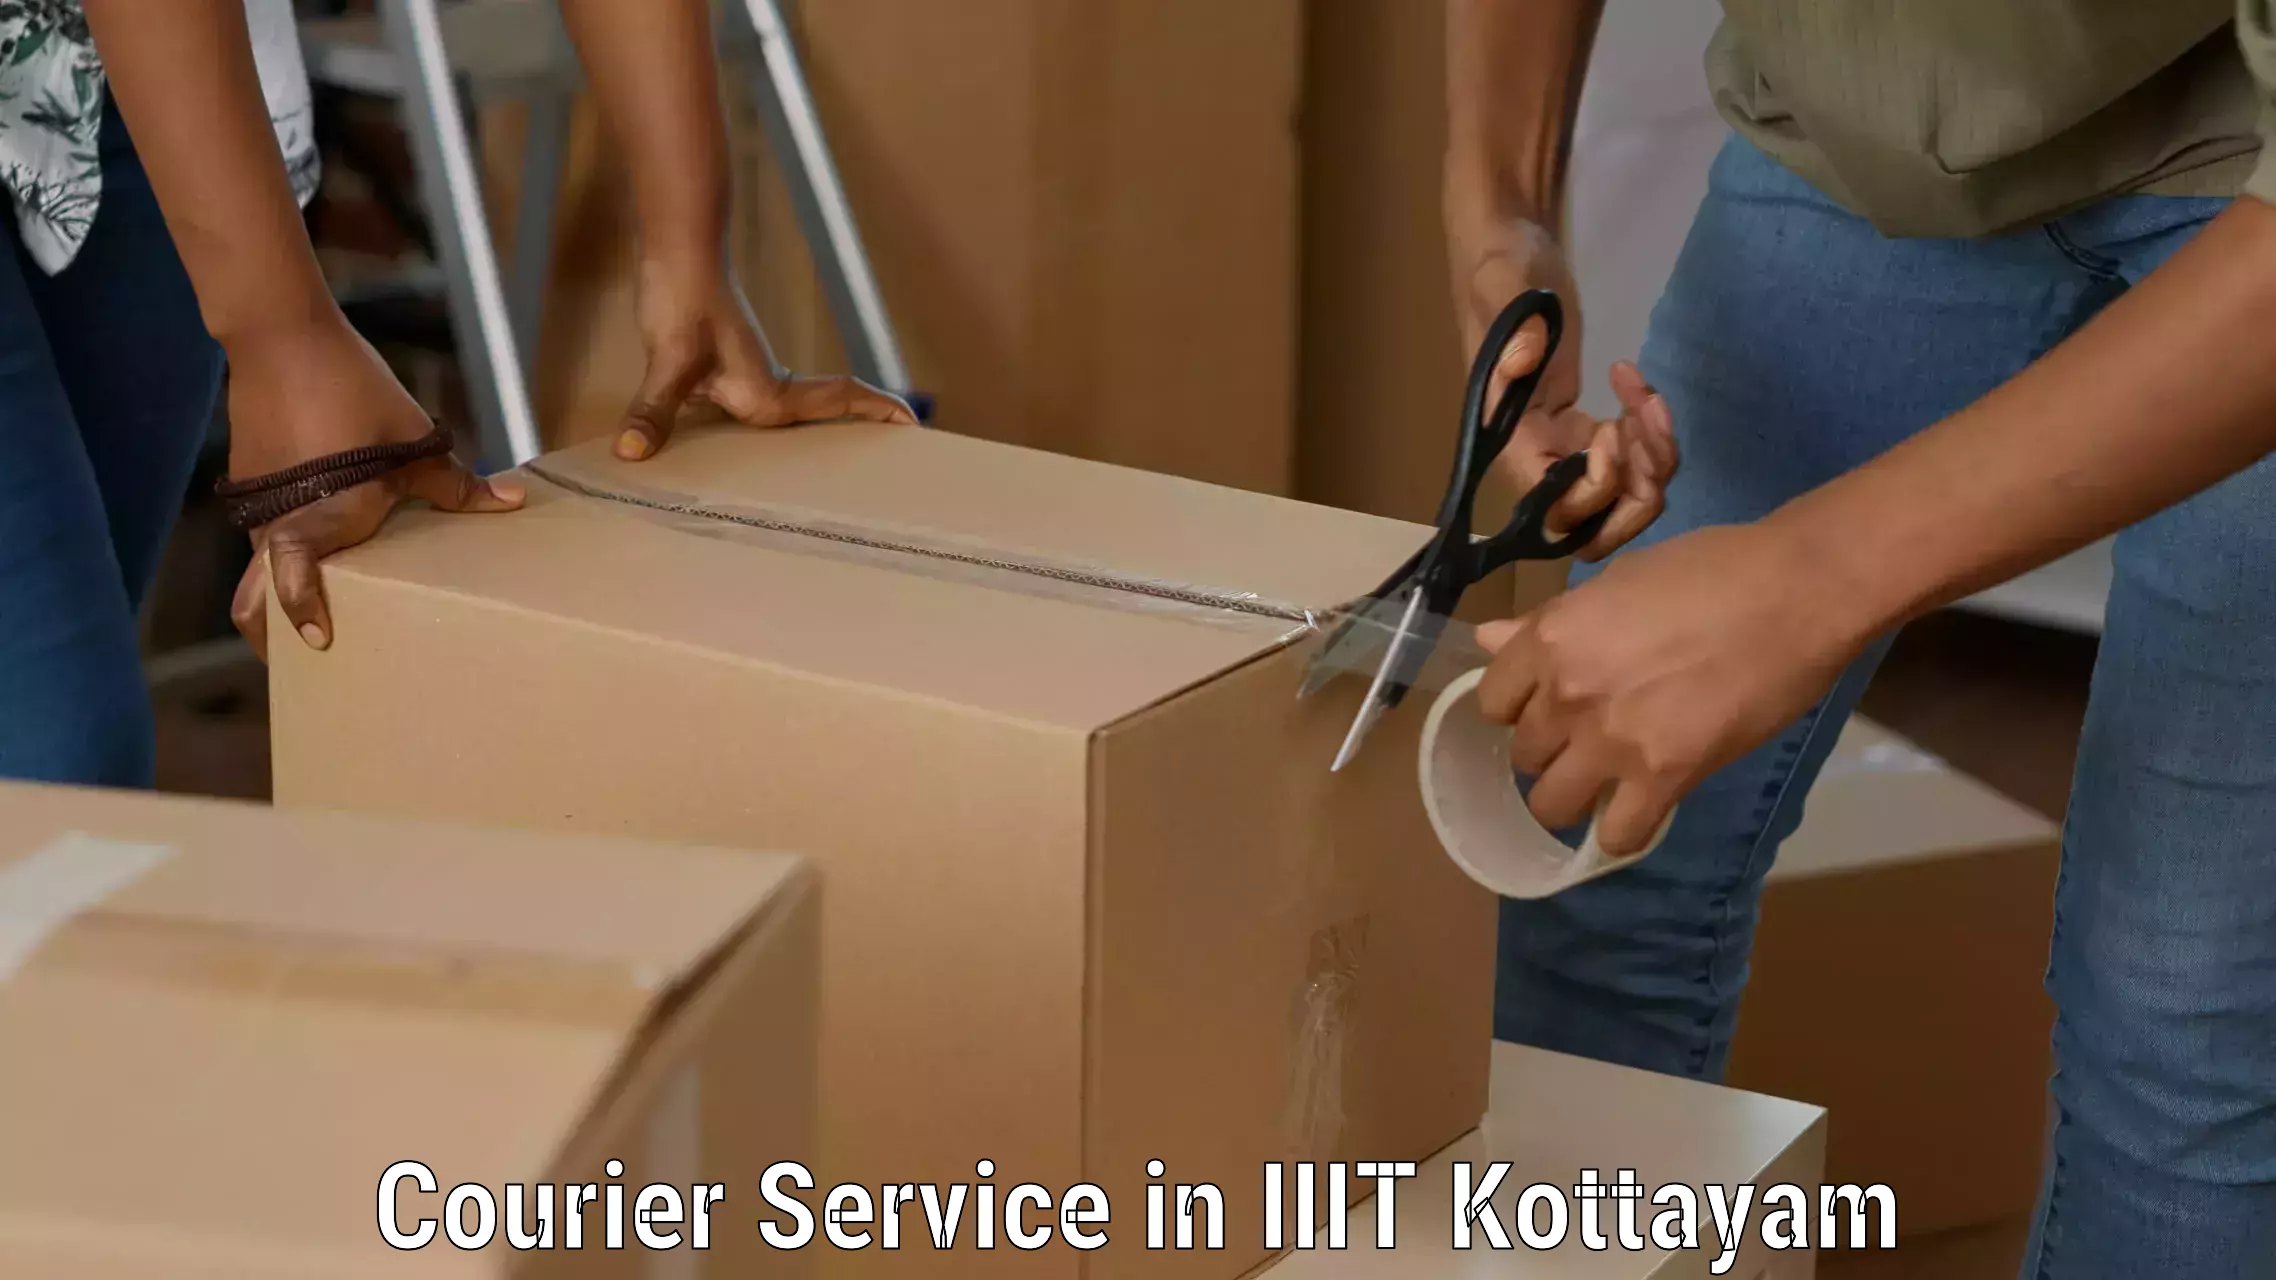 Efficient parcel transport in IIIT Kottayam